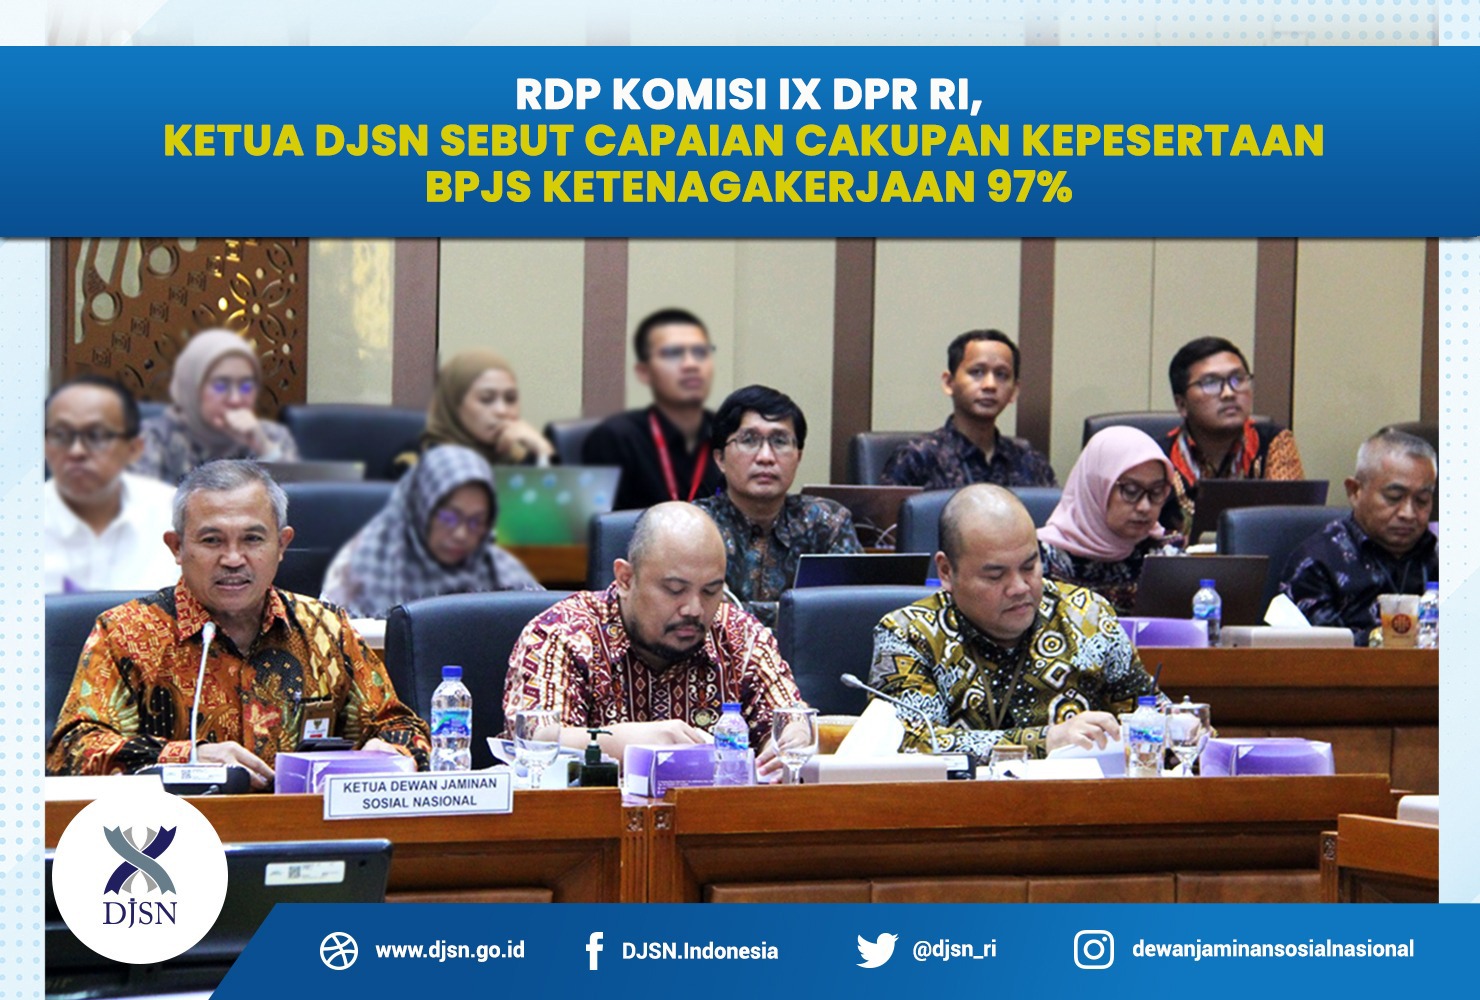 RDP Komisi IX DPR RI, Ketua DJSN sebut capaian cakupan kepesertaan BPJS Ketenagakerjaan 97%